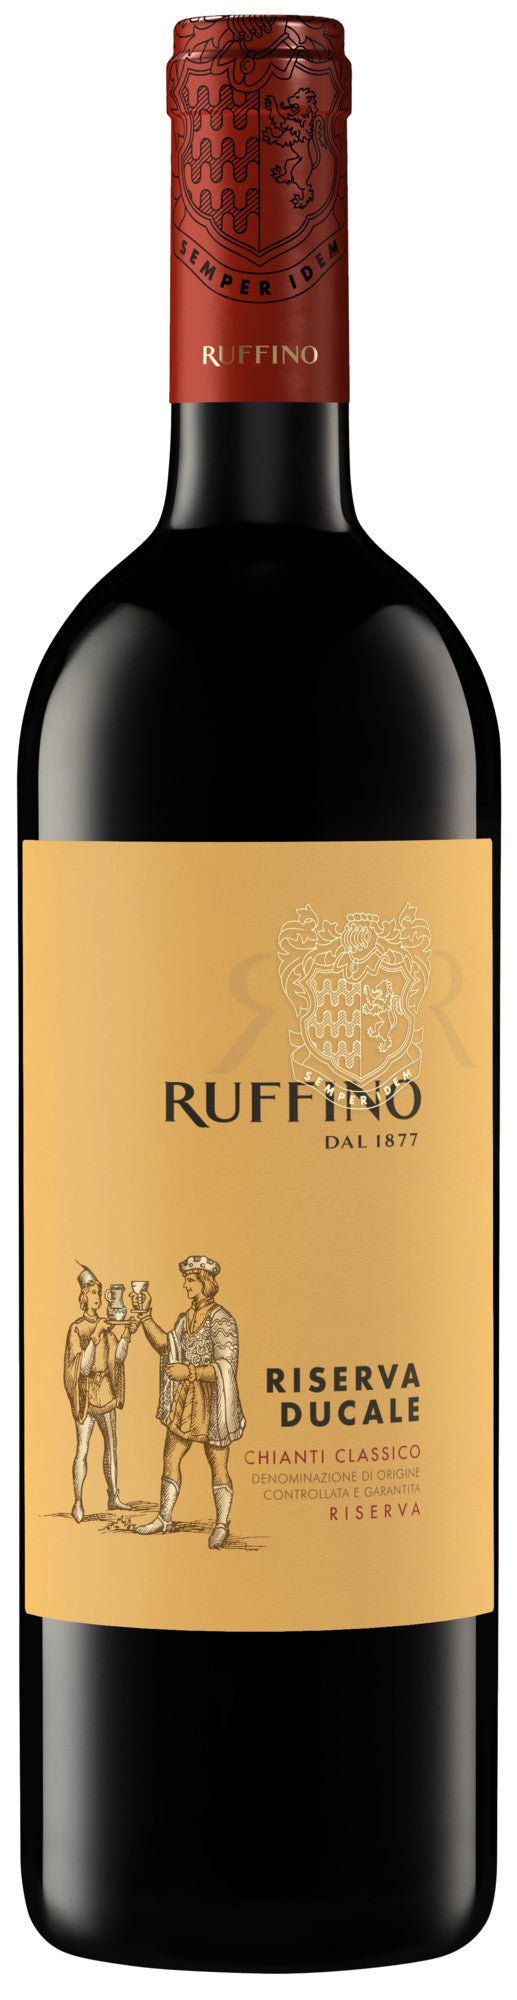 Ruffino Riserva Ducale Chianti Classico DOCG Sangiovese Red Blend Italian Red Wine